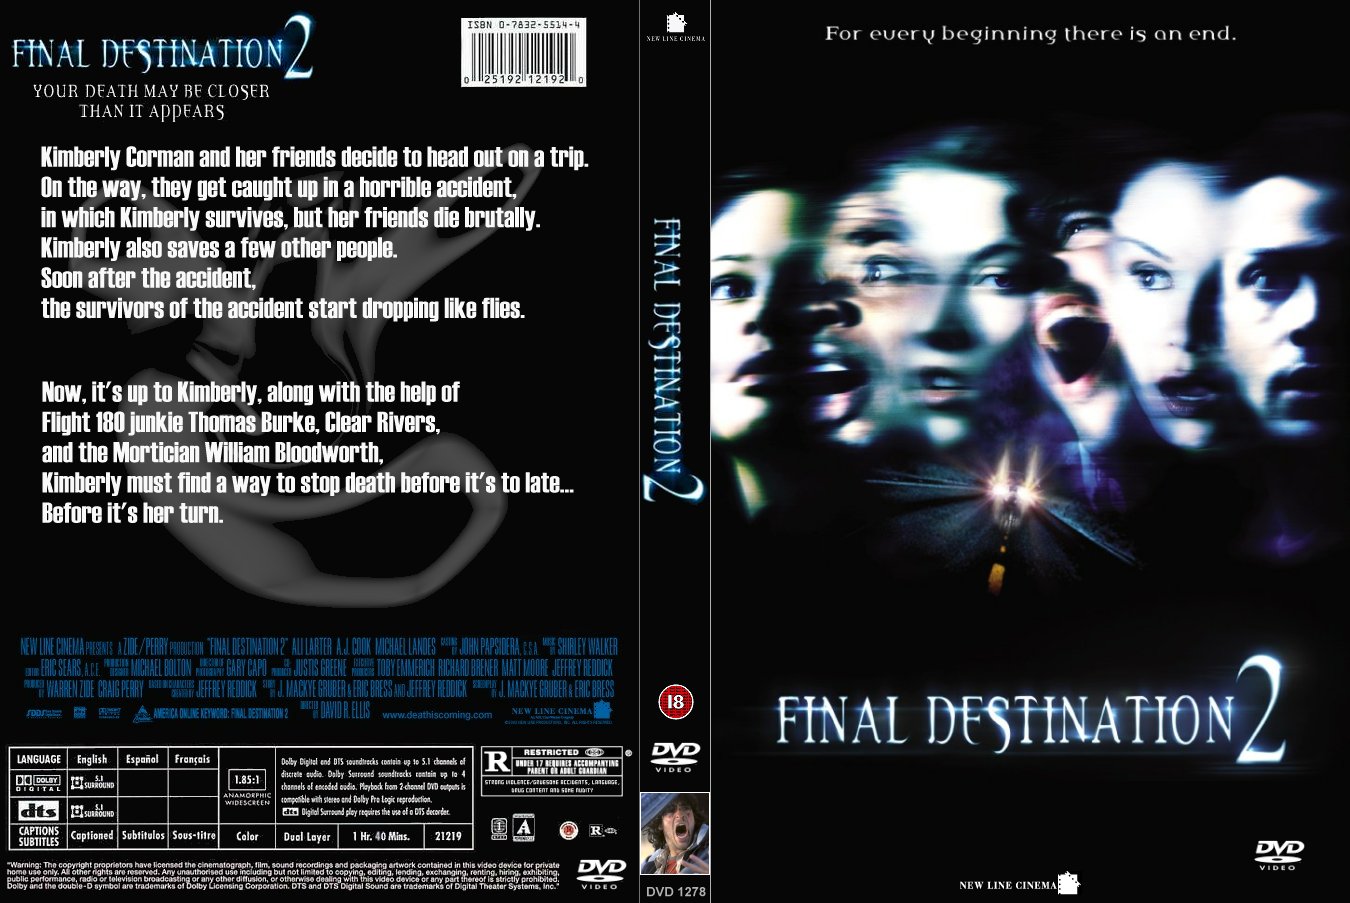 final destination 1 dvd